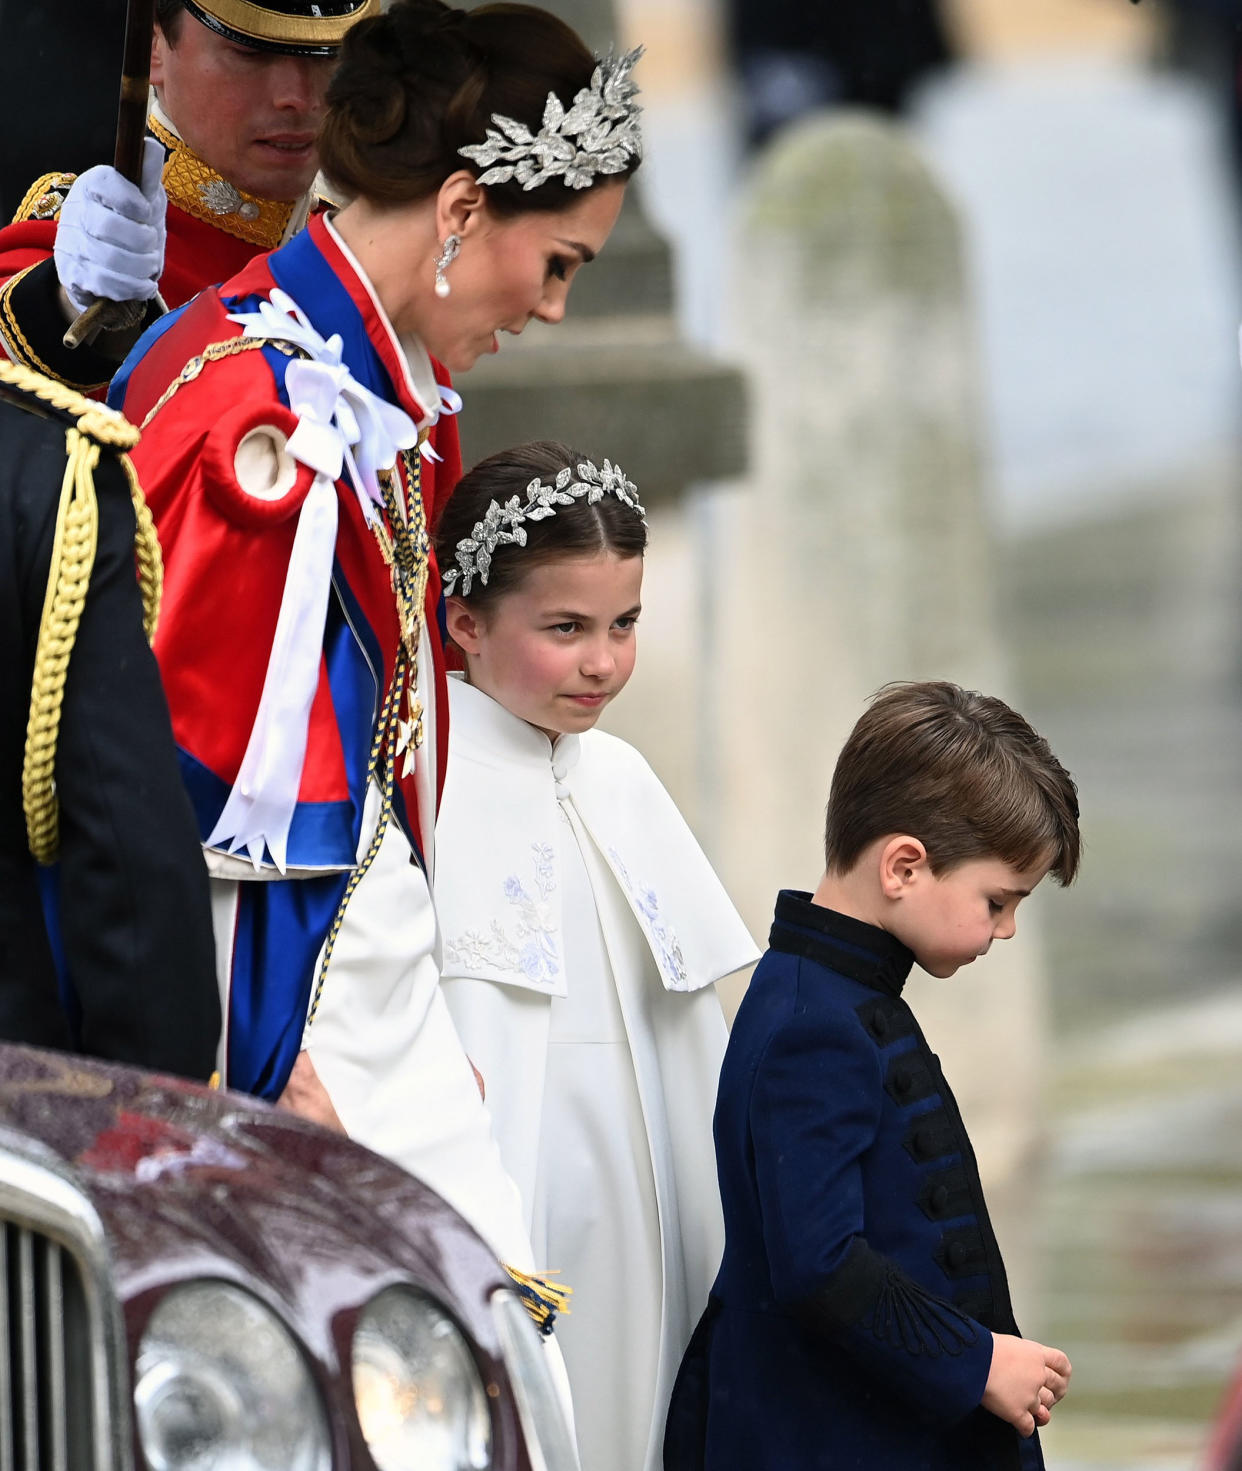 Image: Coronation of King Charles III (Andy Rain / EPA)